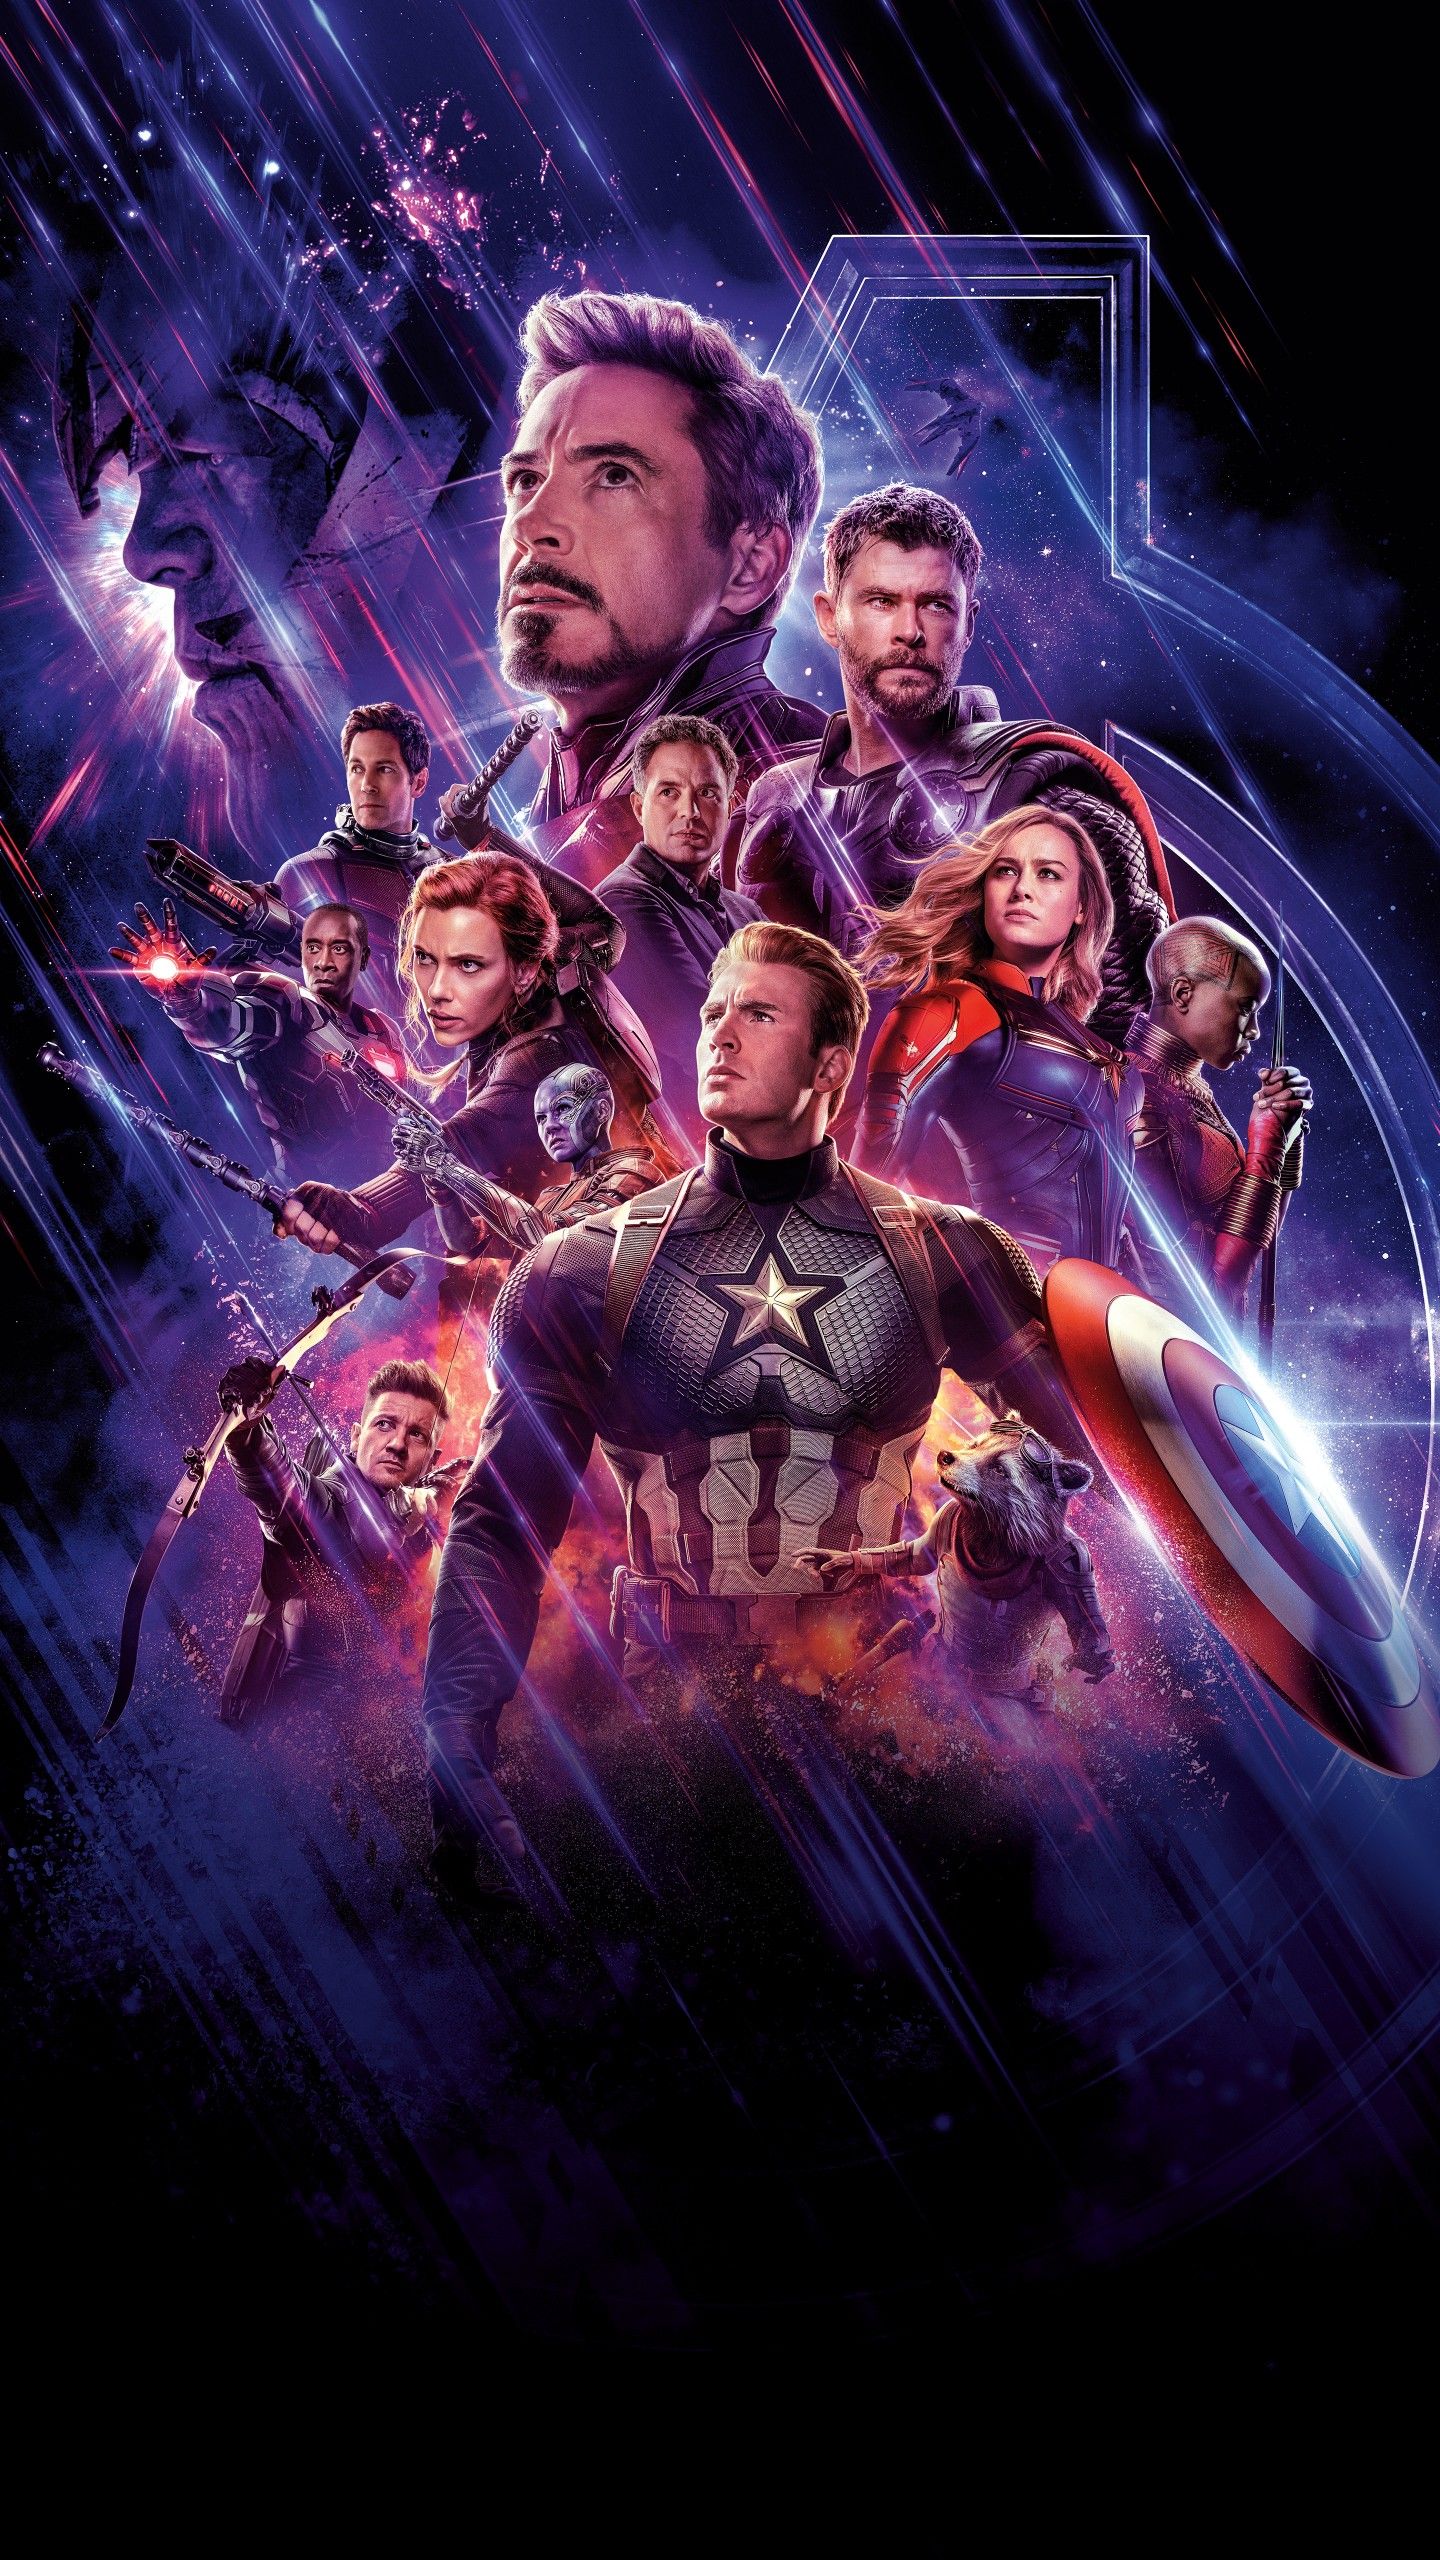 Avengers: Endgame 4K Wallpaper, Marvel Superheroes, Marvel Comics, 5K, Movies